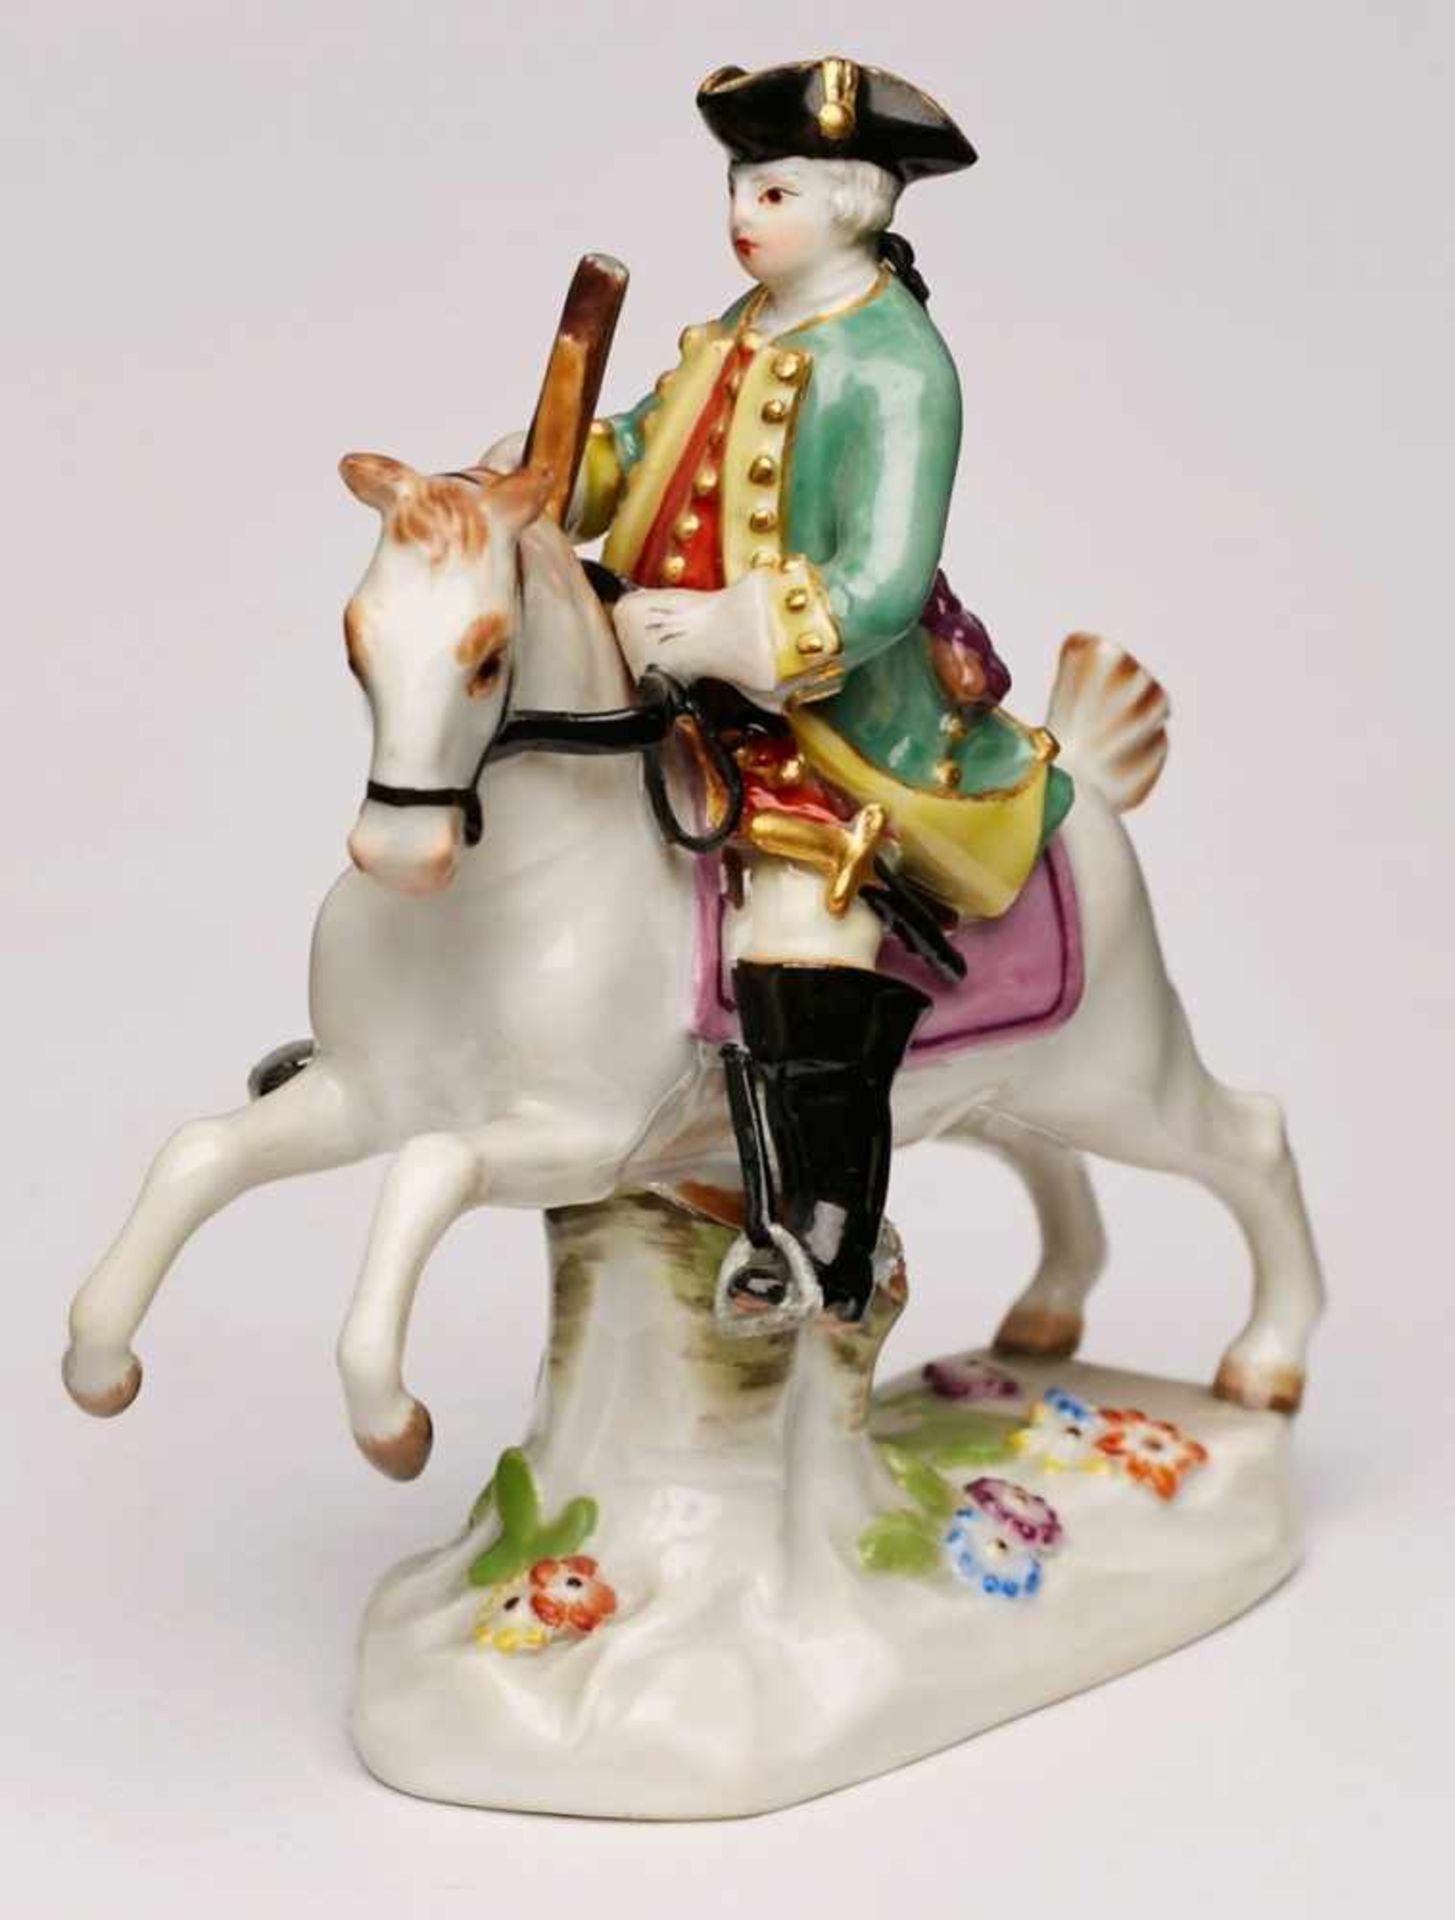 Miniatur-Reiterfigur, Meissen 1971.Pferd m. erhobenen Vorderhufen auf kl. naturalist. Sockel, auf